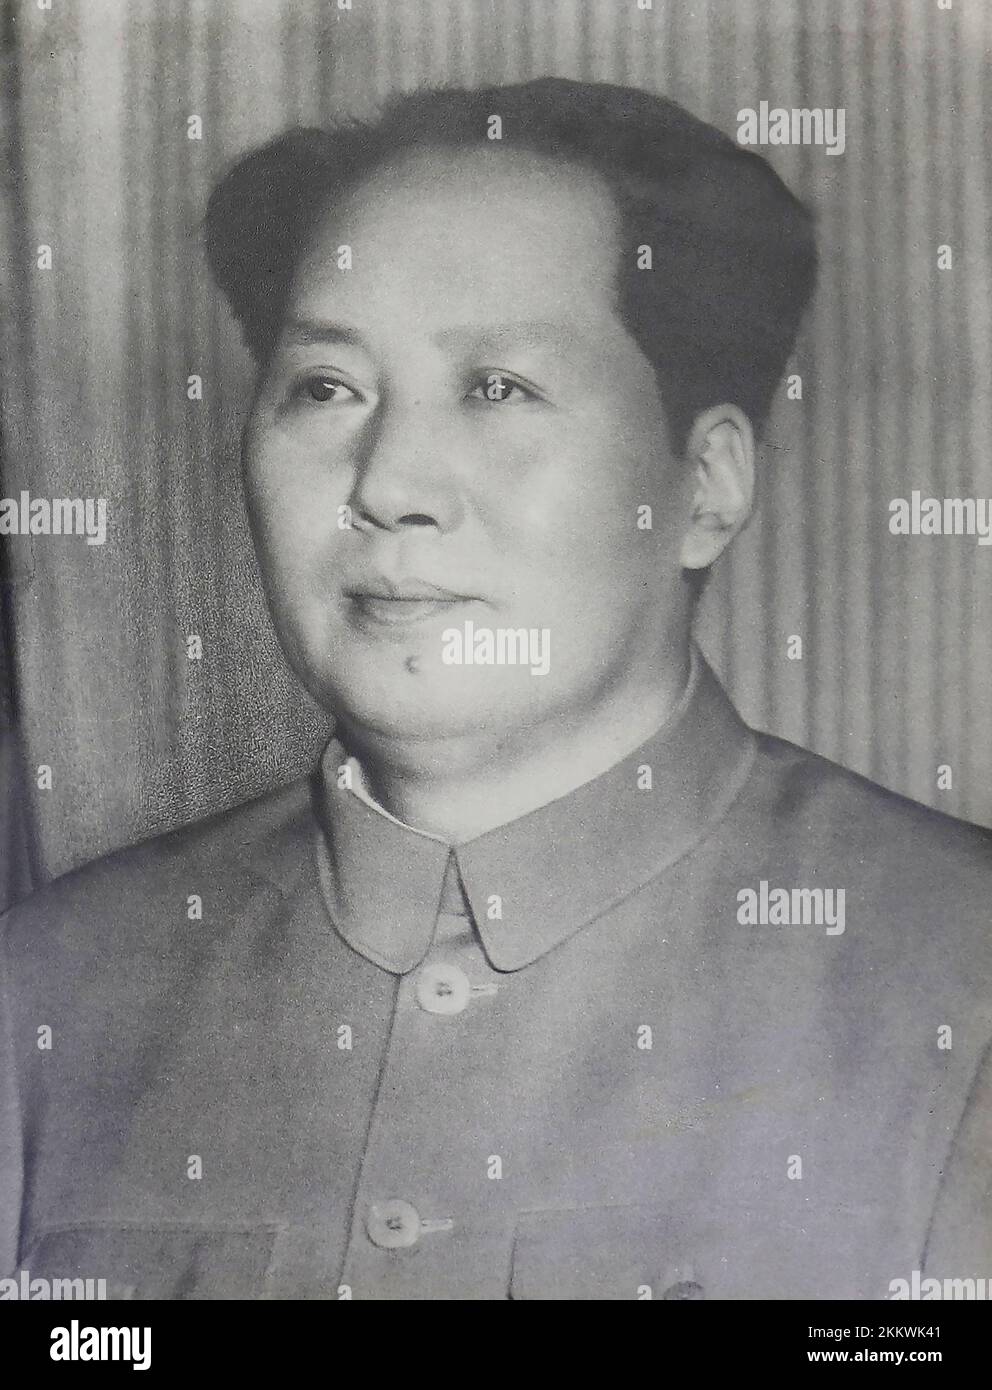 Mao Zedong (1893 – 1976), noto anche come Presidente Mao, è stato un rivoluzionario comunista cinese che divenne il padre fondatore della Repubblica popolare Cinese (RPC), che ha governato come presidente del Partito comunista cinese dalla sua istituzione nel 1949 fino alla sua morte nel 1976. Ideologicamente marxista-leninista, le sue teorie, strategie militari e politiche sono collettivamente note come maoismo. Foto Stock